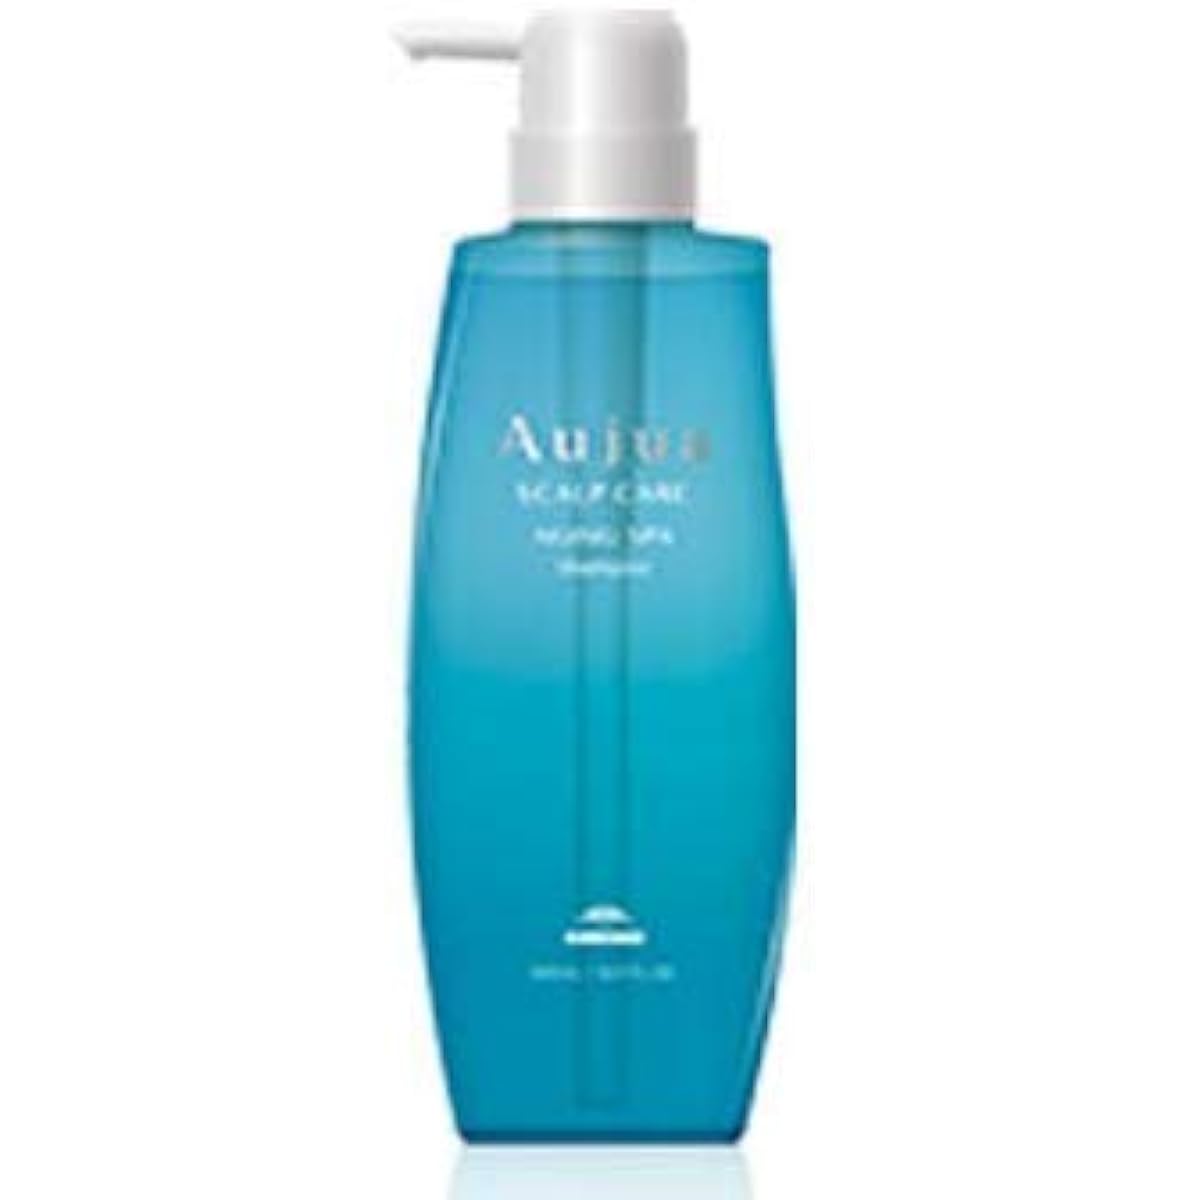 Aujua AS Aging Spa Shampoo (500mL)